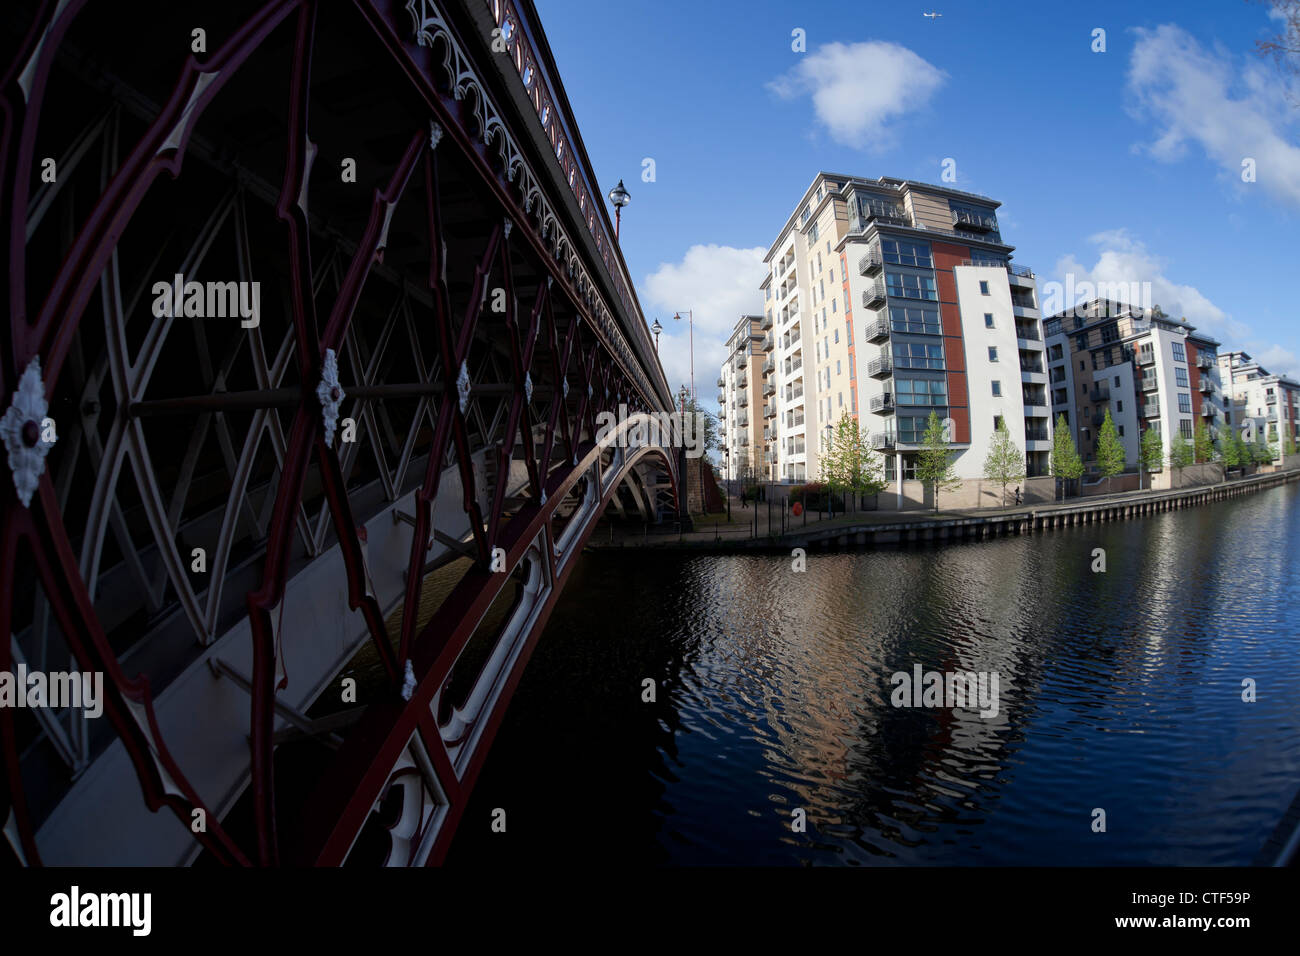 Bloques de apartamentos residenciales en la orilla sur del río Aire entre Crown Point Bridge y Brewery Wharf en Leeds. Foto de stock